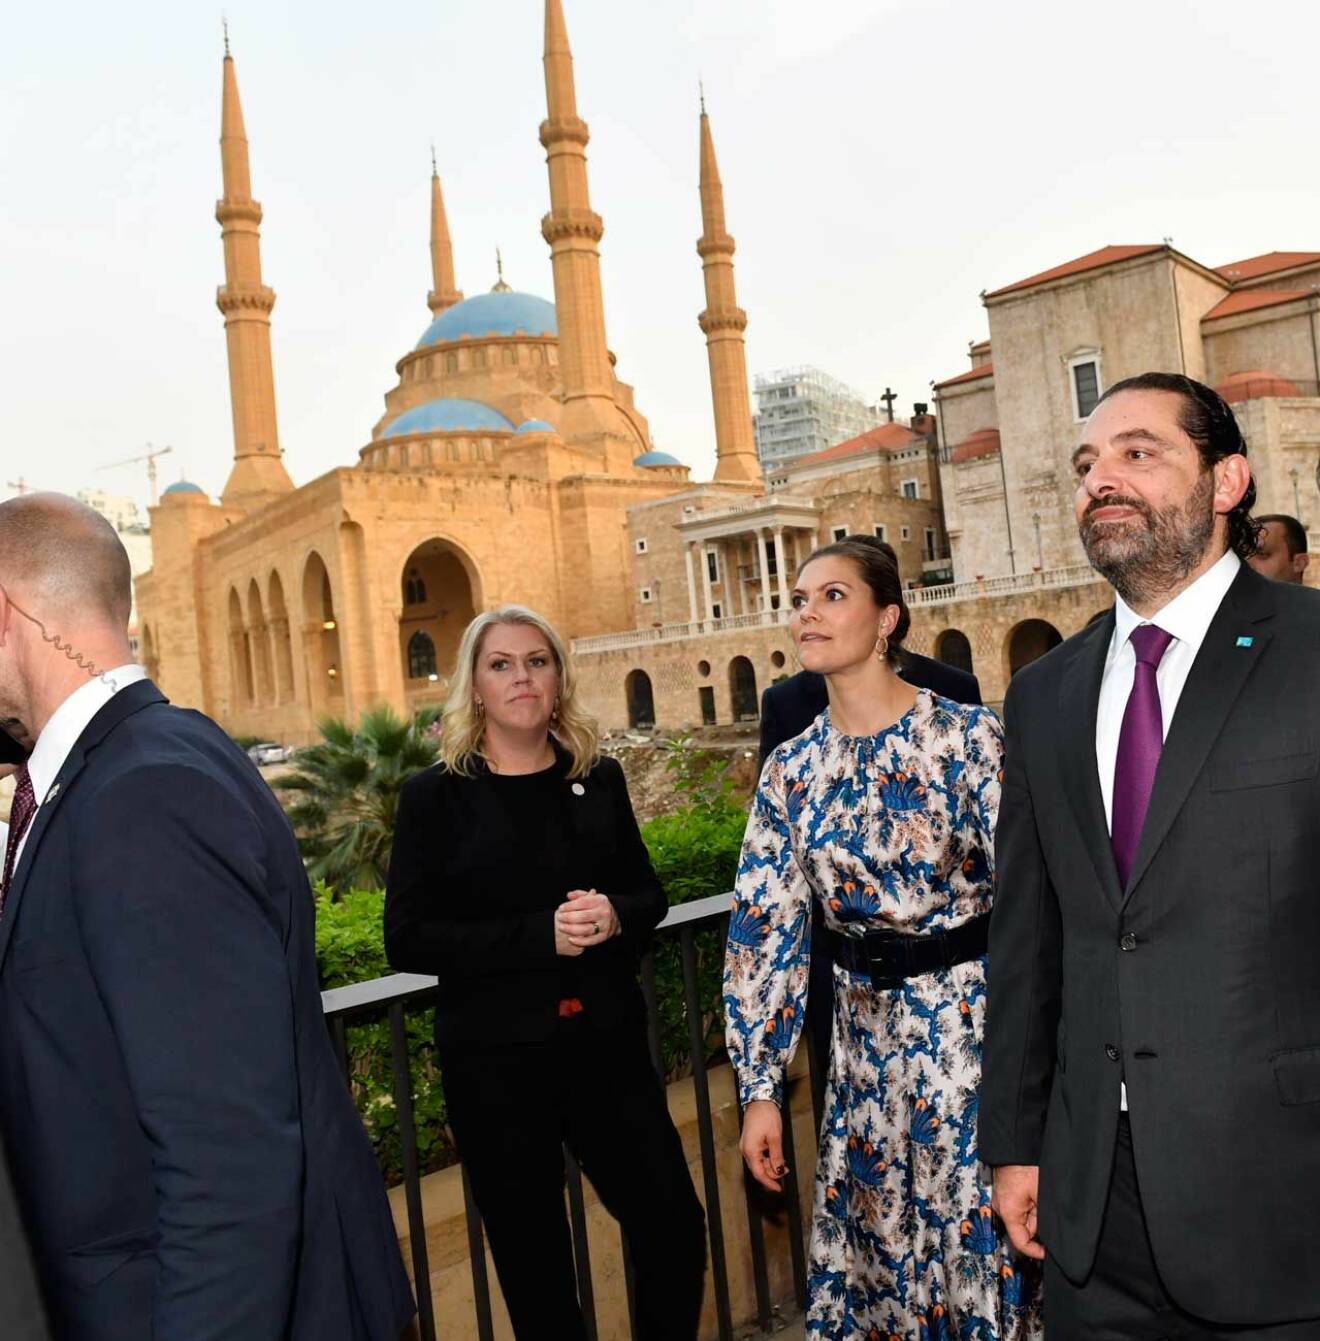 Kronrprinsessan Victoria och prins Daniel framför den stora moskén under sin guidade tur i centrala Beirut. Guide var Libanons premiärminister Saad Hariri.